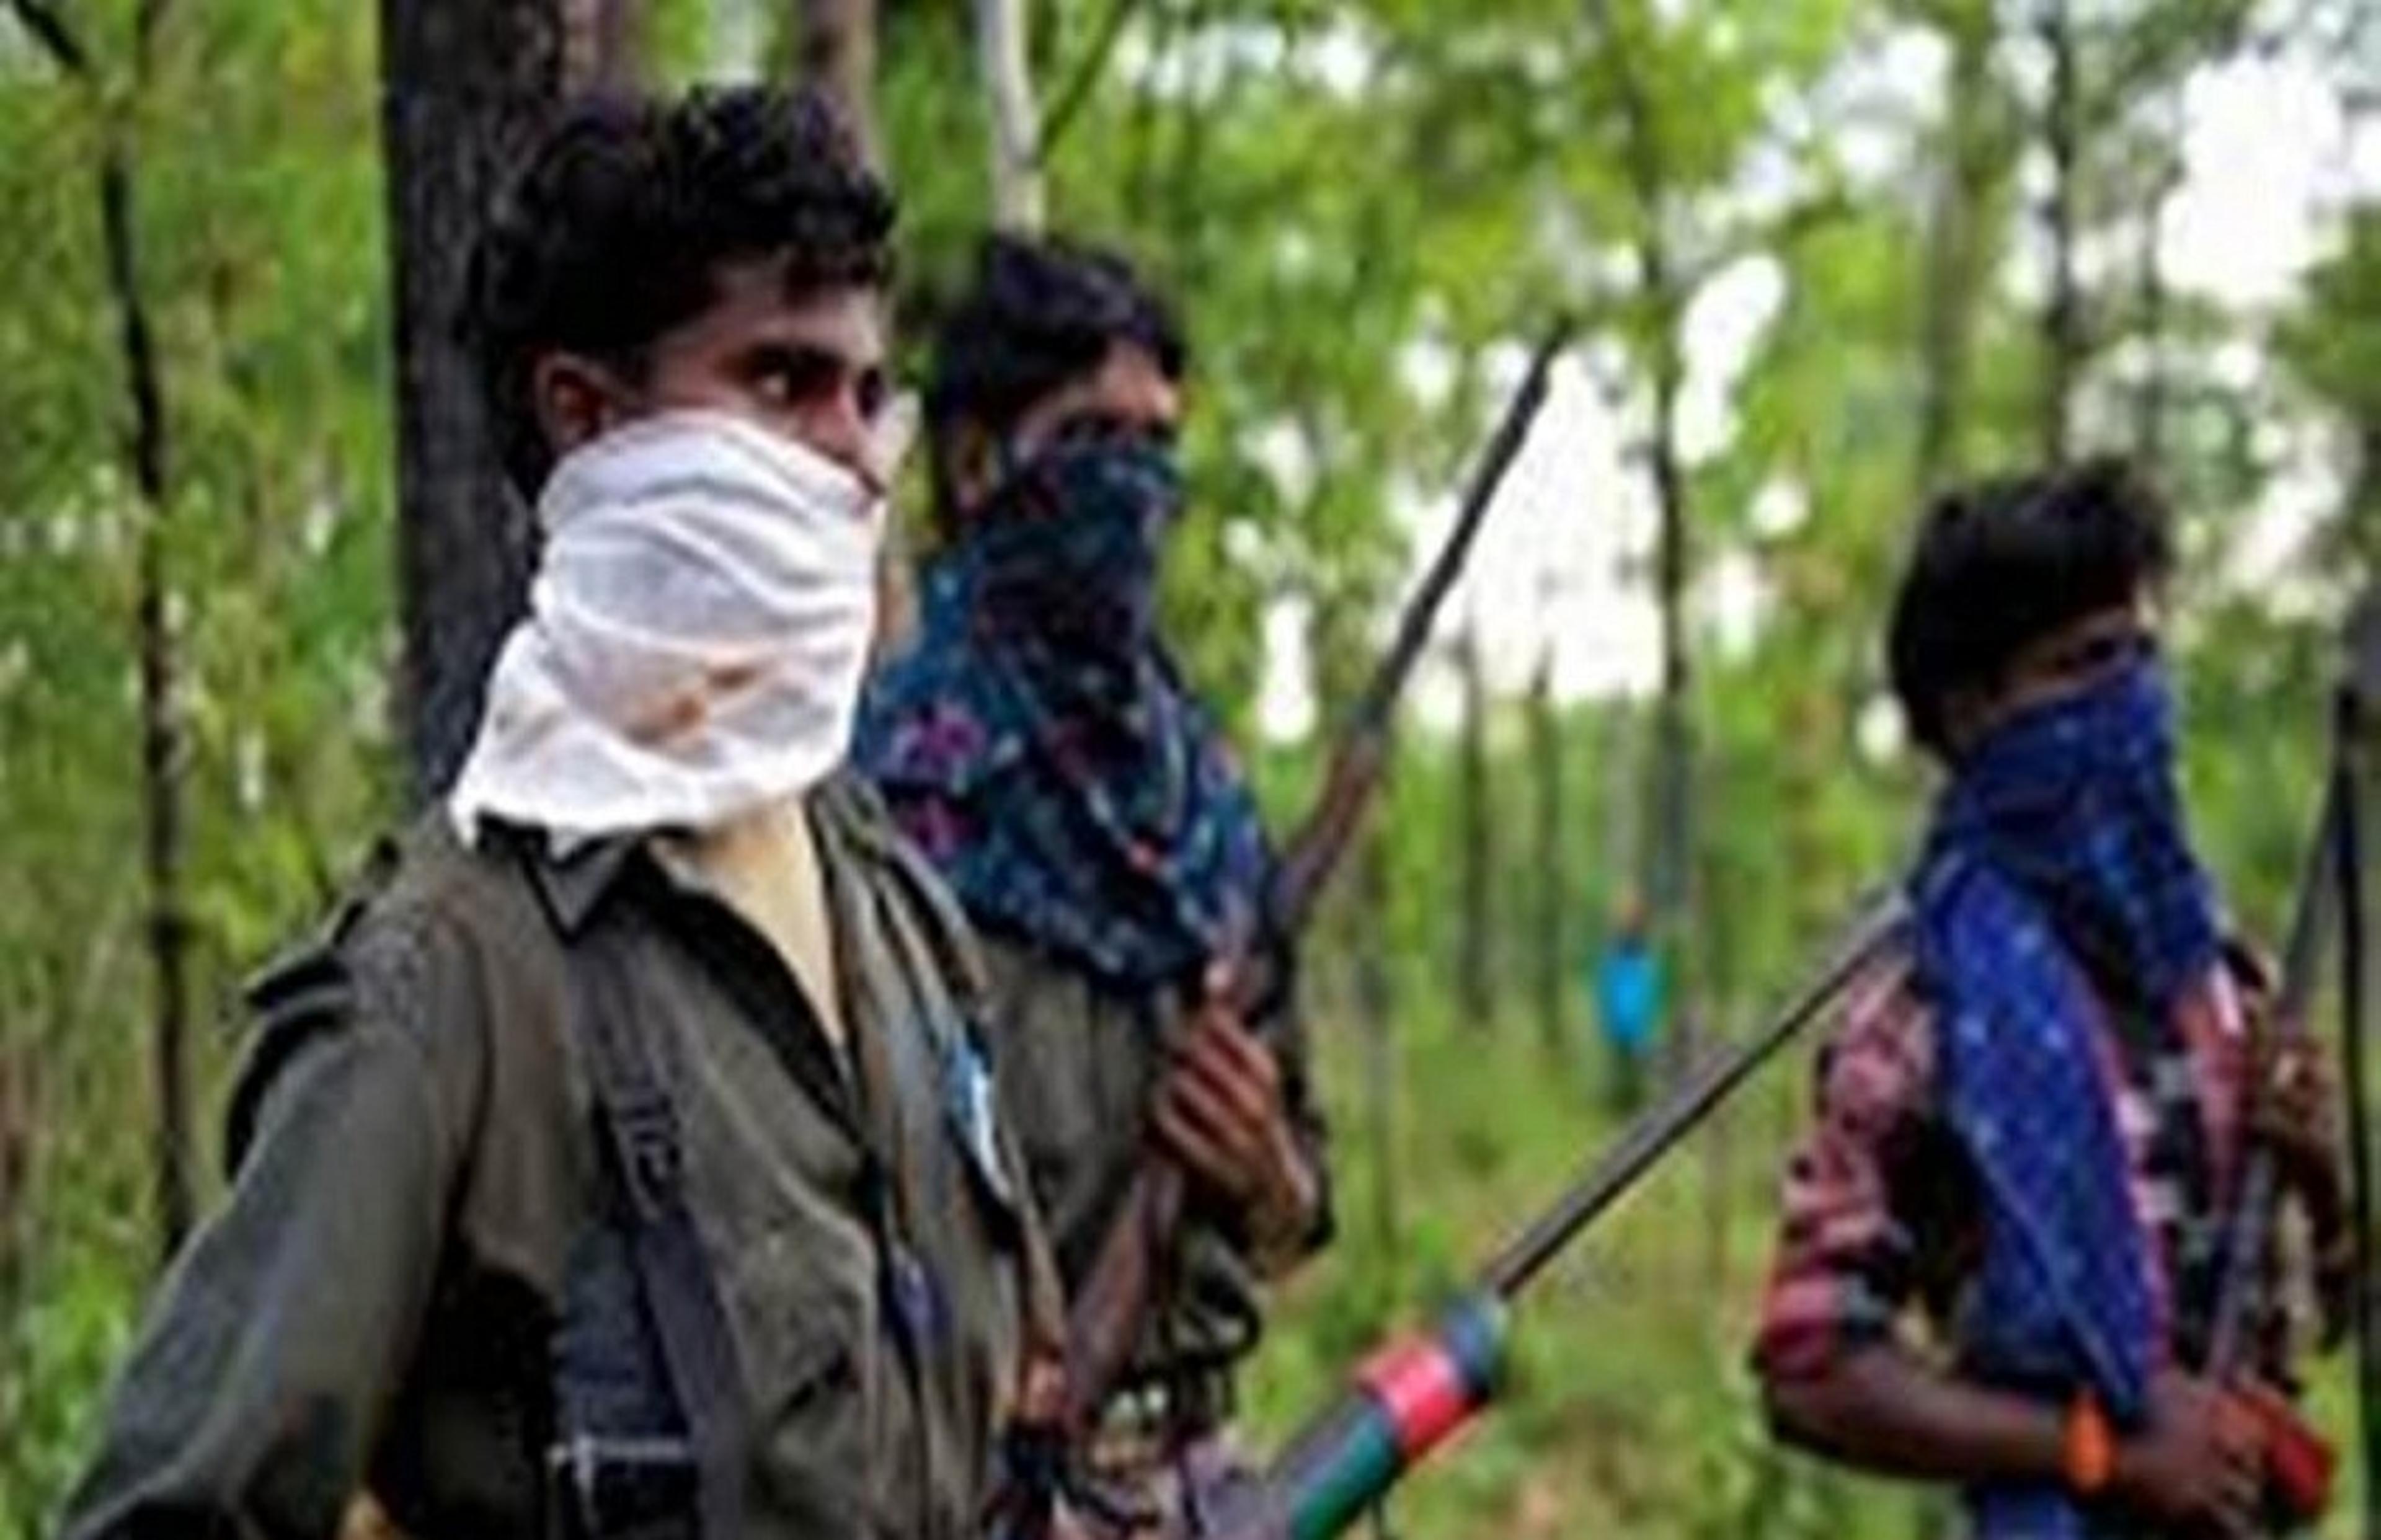 Kanker Naxalite Encounter: छत्तीसगढ़ कांकेर में तीन नक्सली ढेर, युद्धक हथियार हुए बरामद